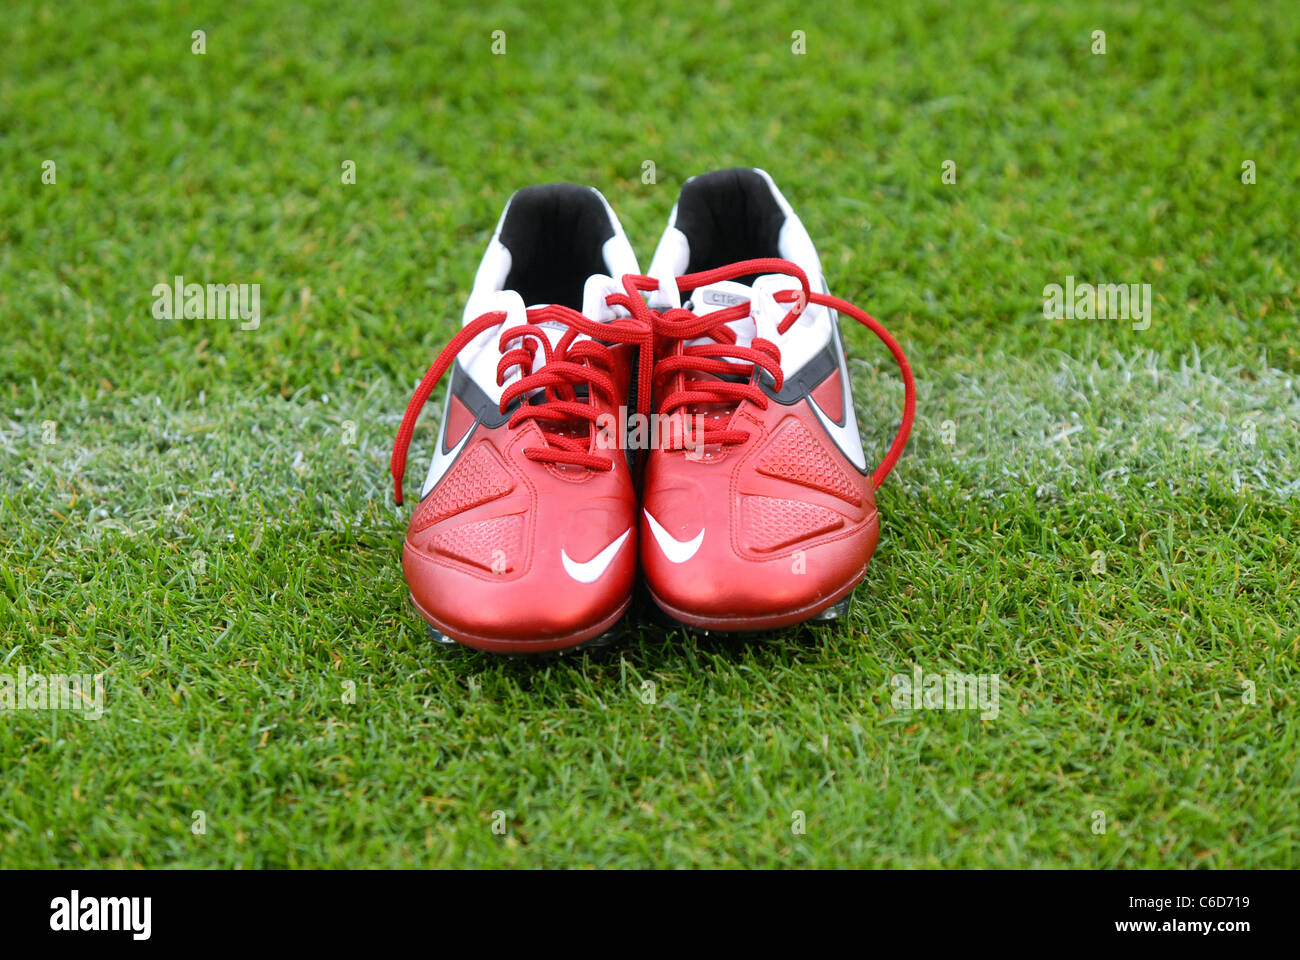 Coppia di red nike football scarpe sulla linea bianca di un campo di calcio  Foto stock - Alamy